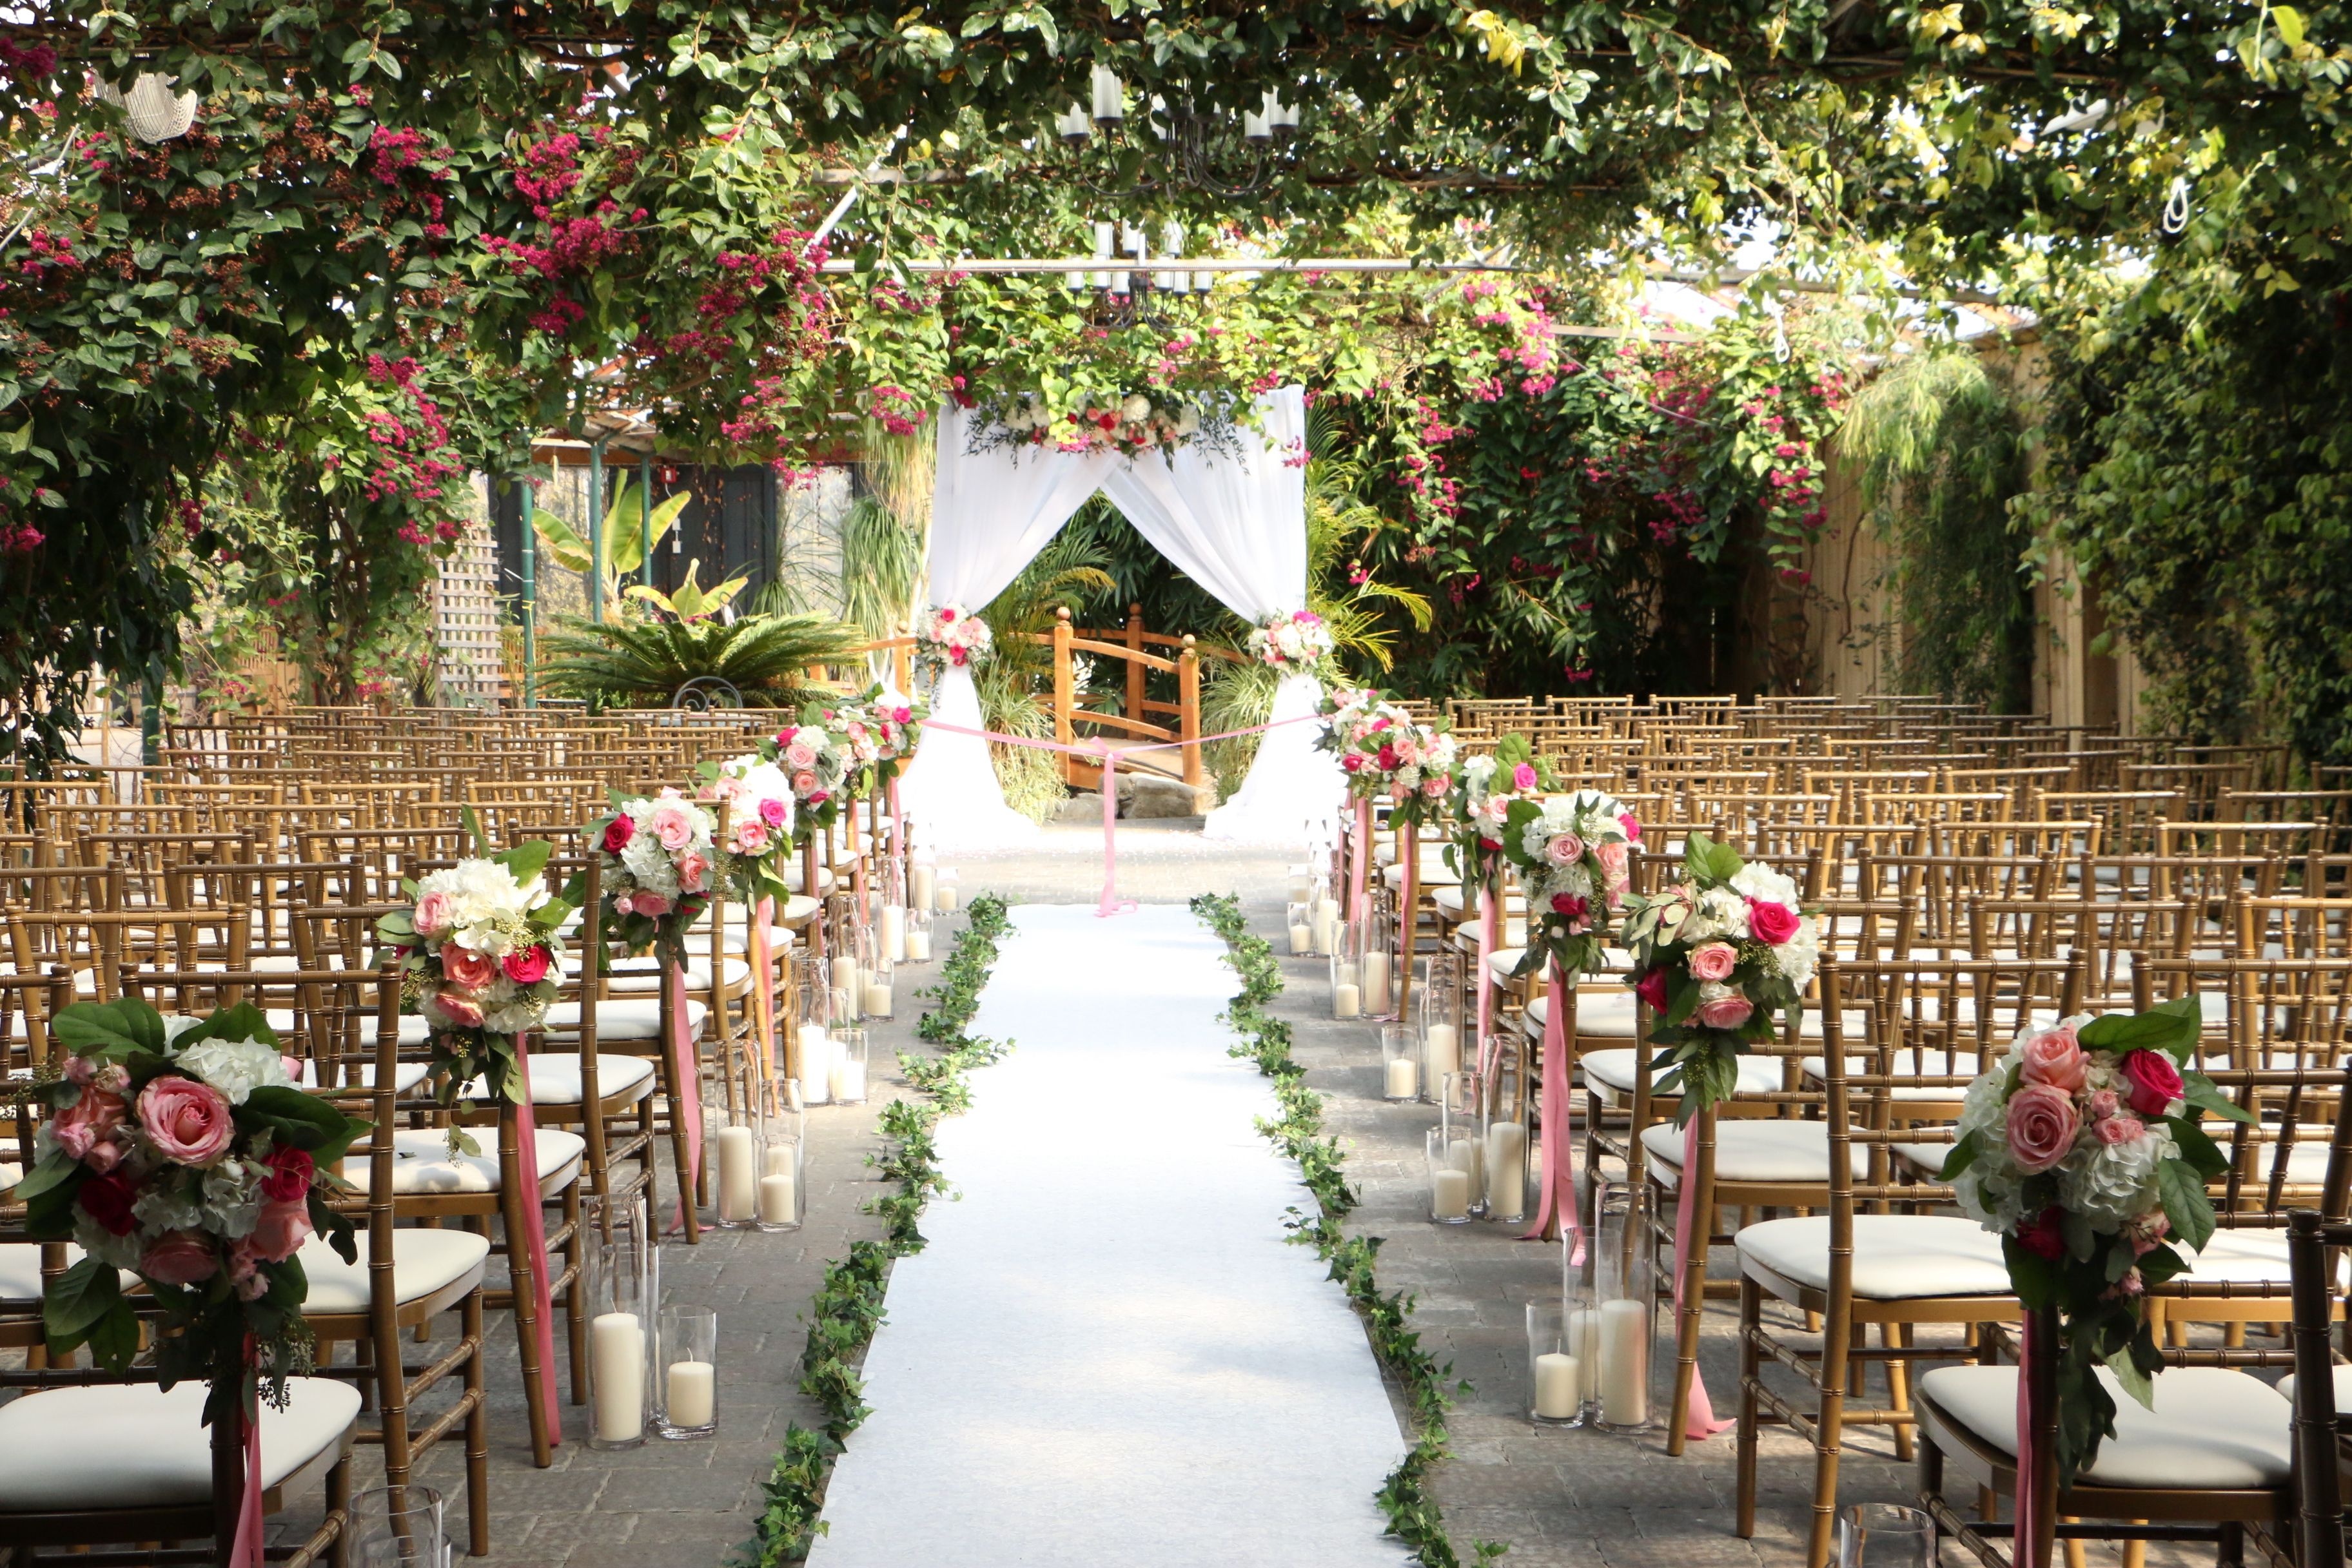 Un lieu de mariage en plein air | Source : Shutterstock